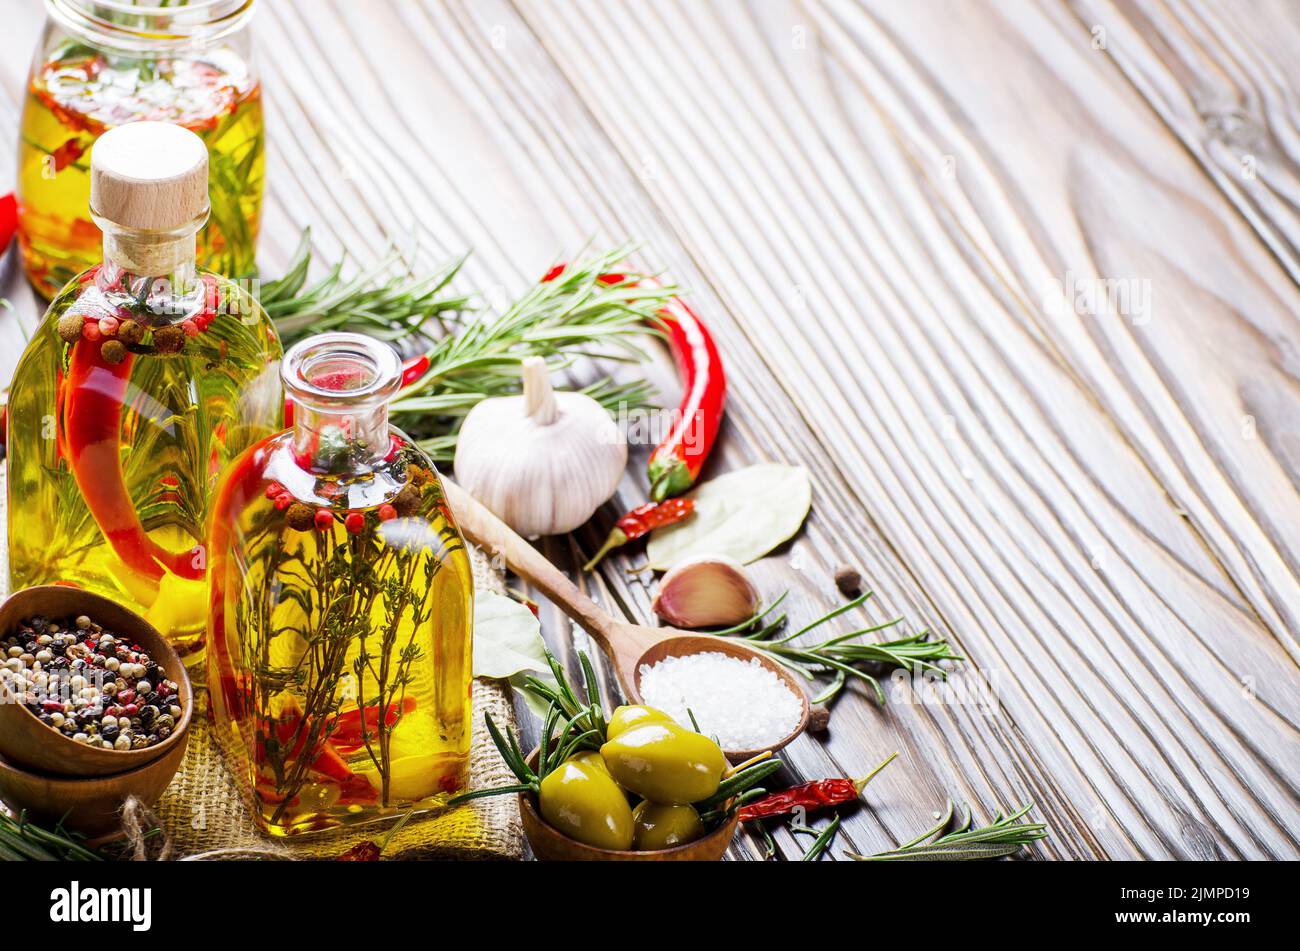 Contexte alimentaire fait d'huiles condiments et épices sur table de cuisine. Concept de cuisine Banque D'Images